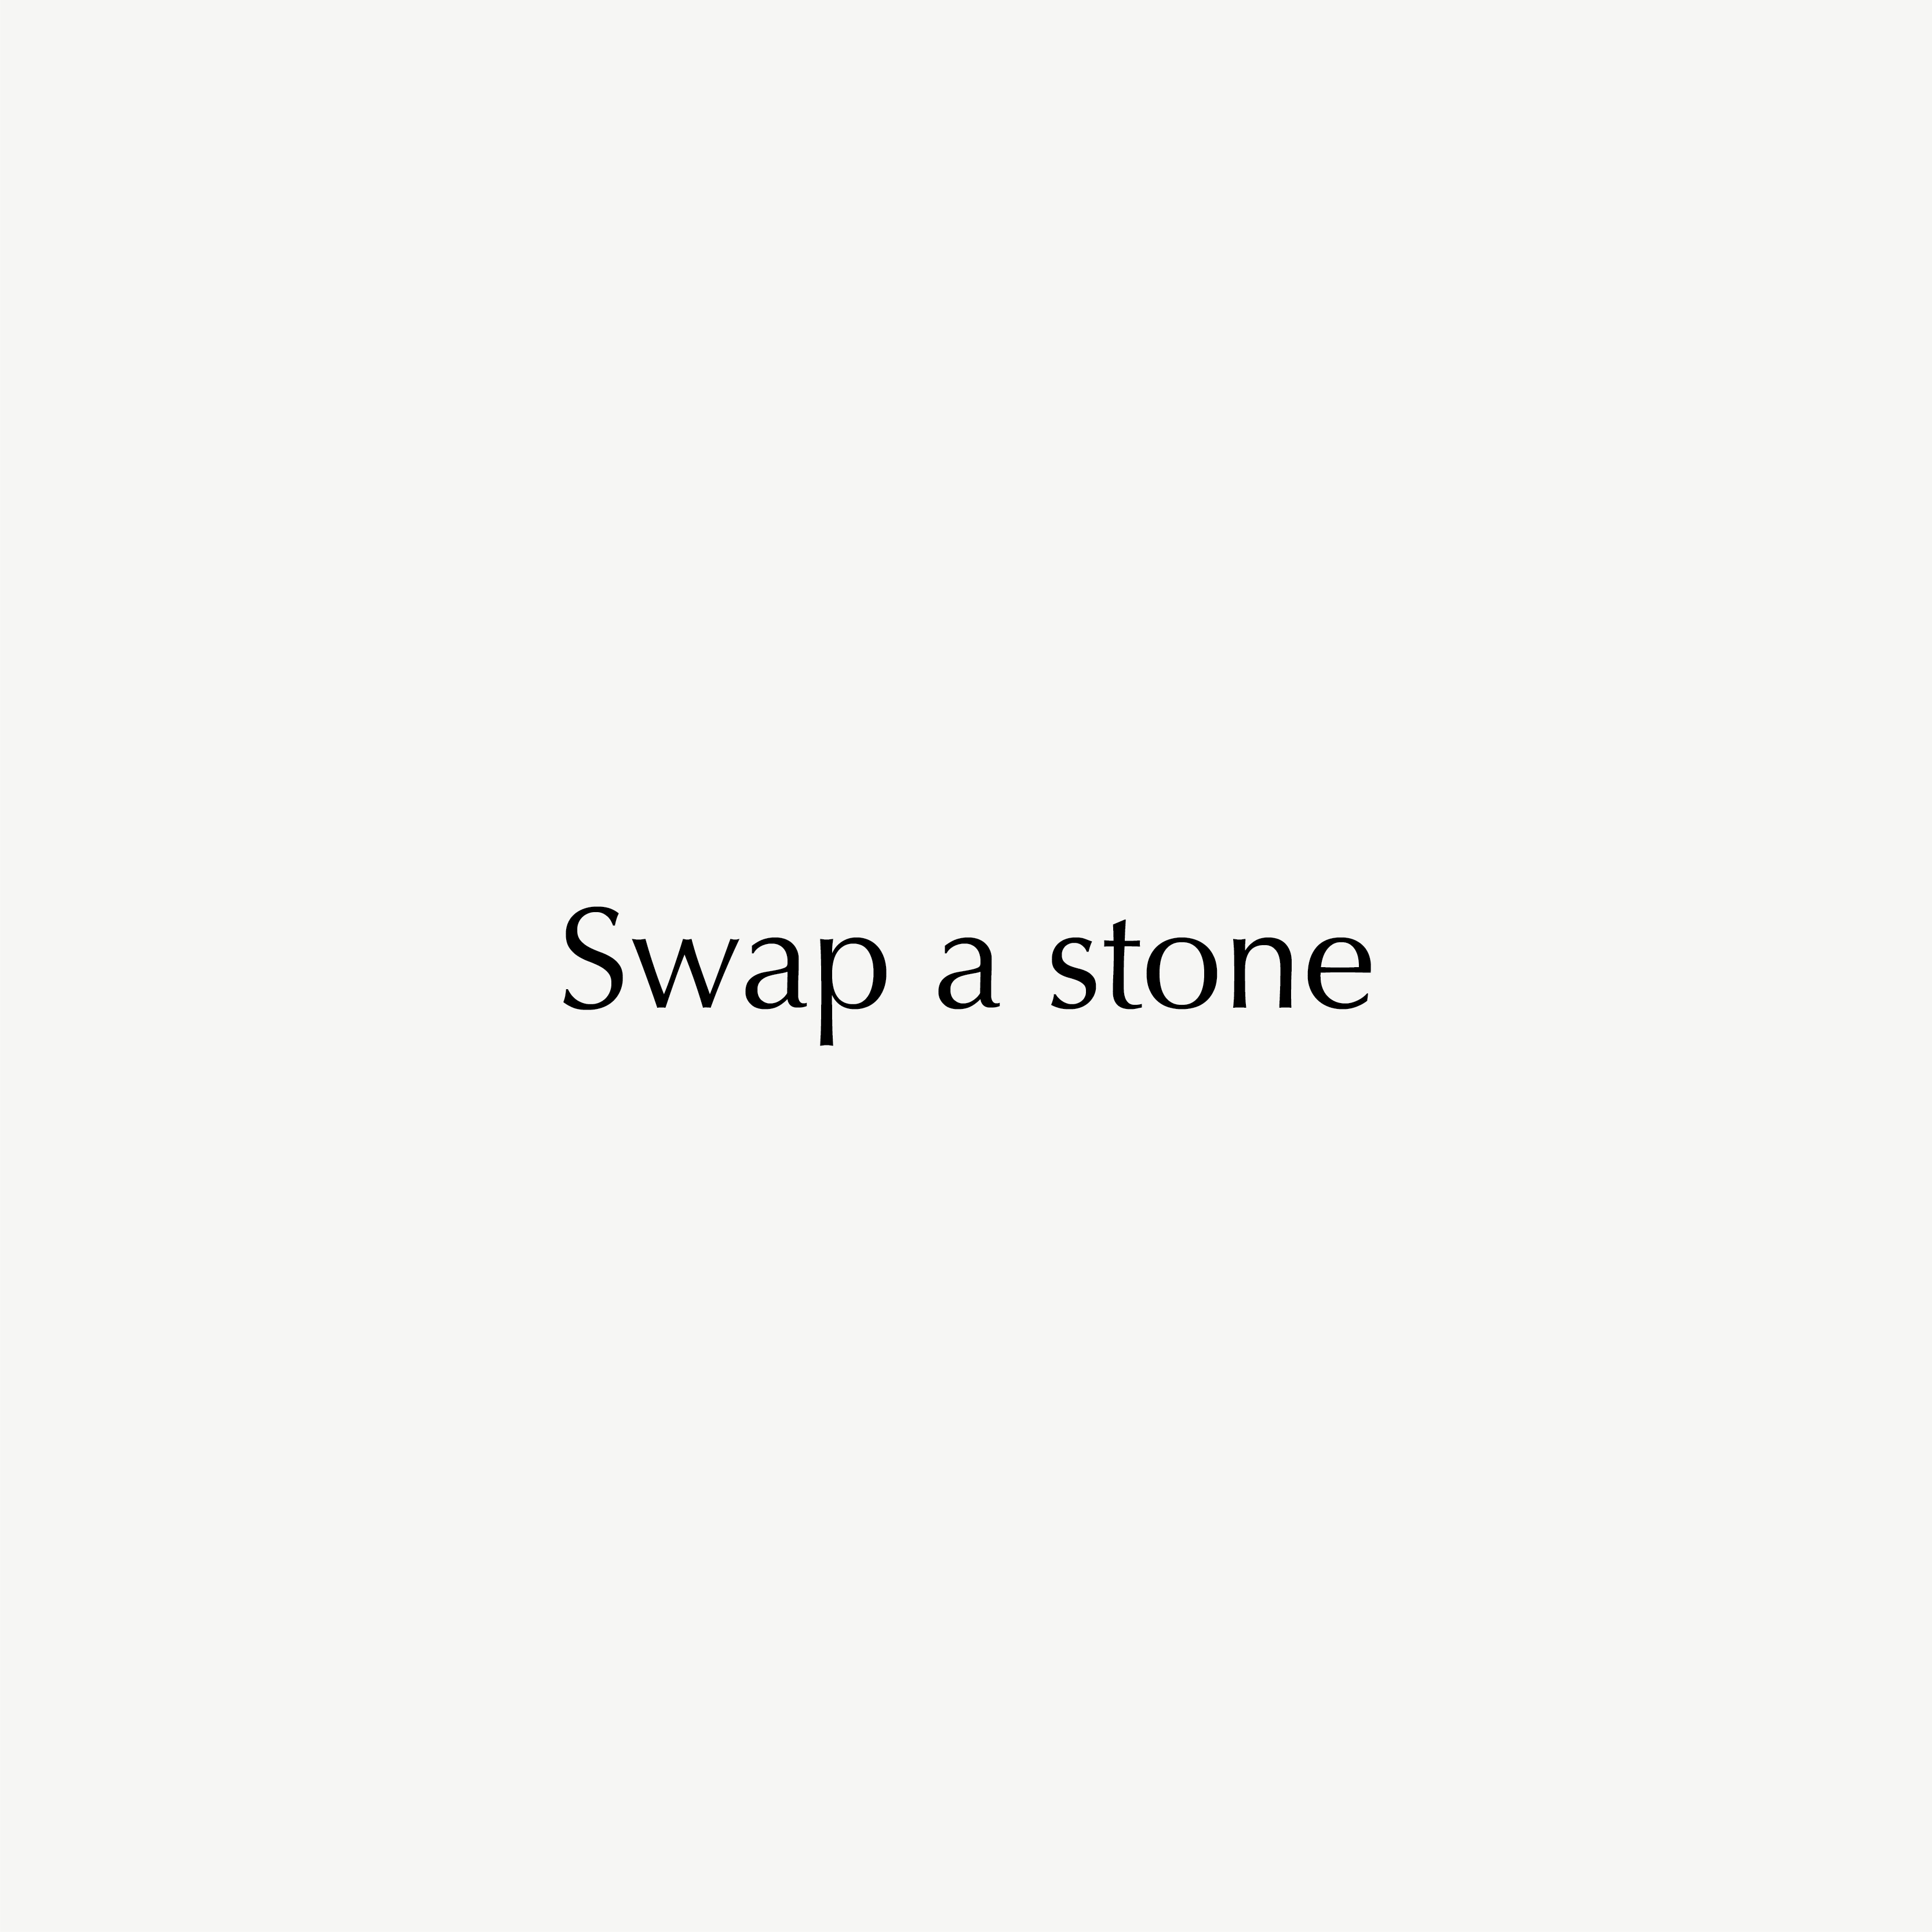 Swap a stone